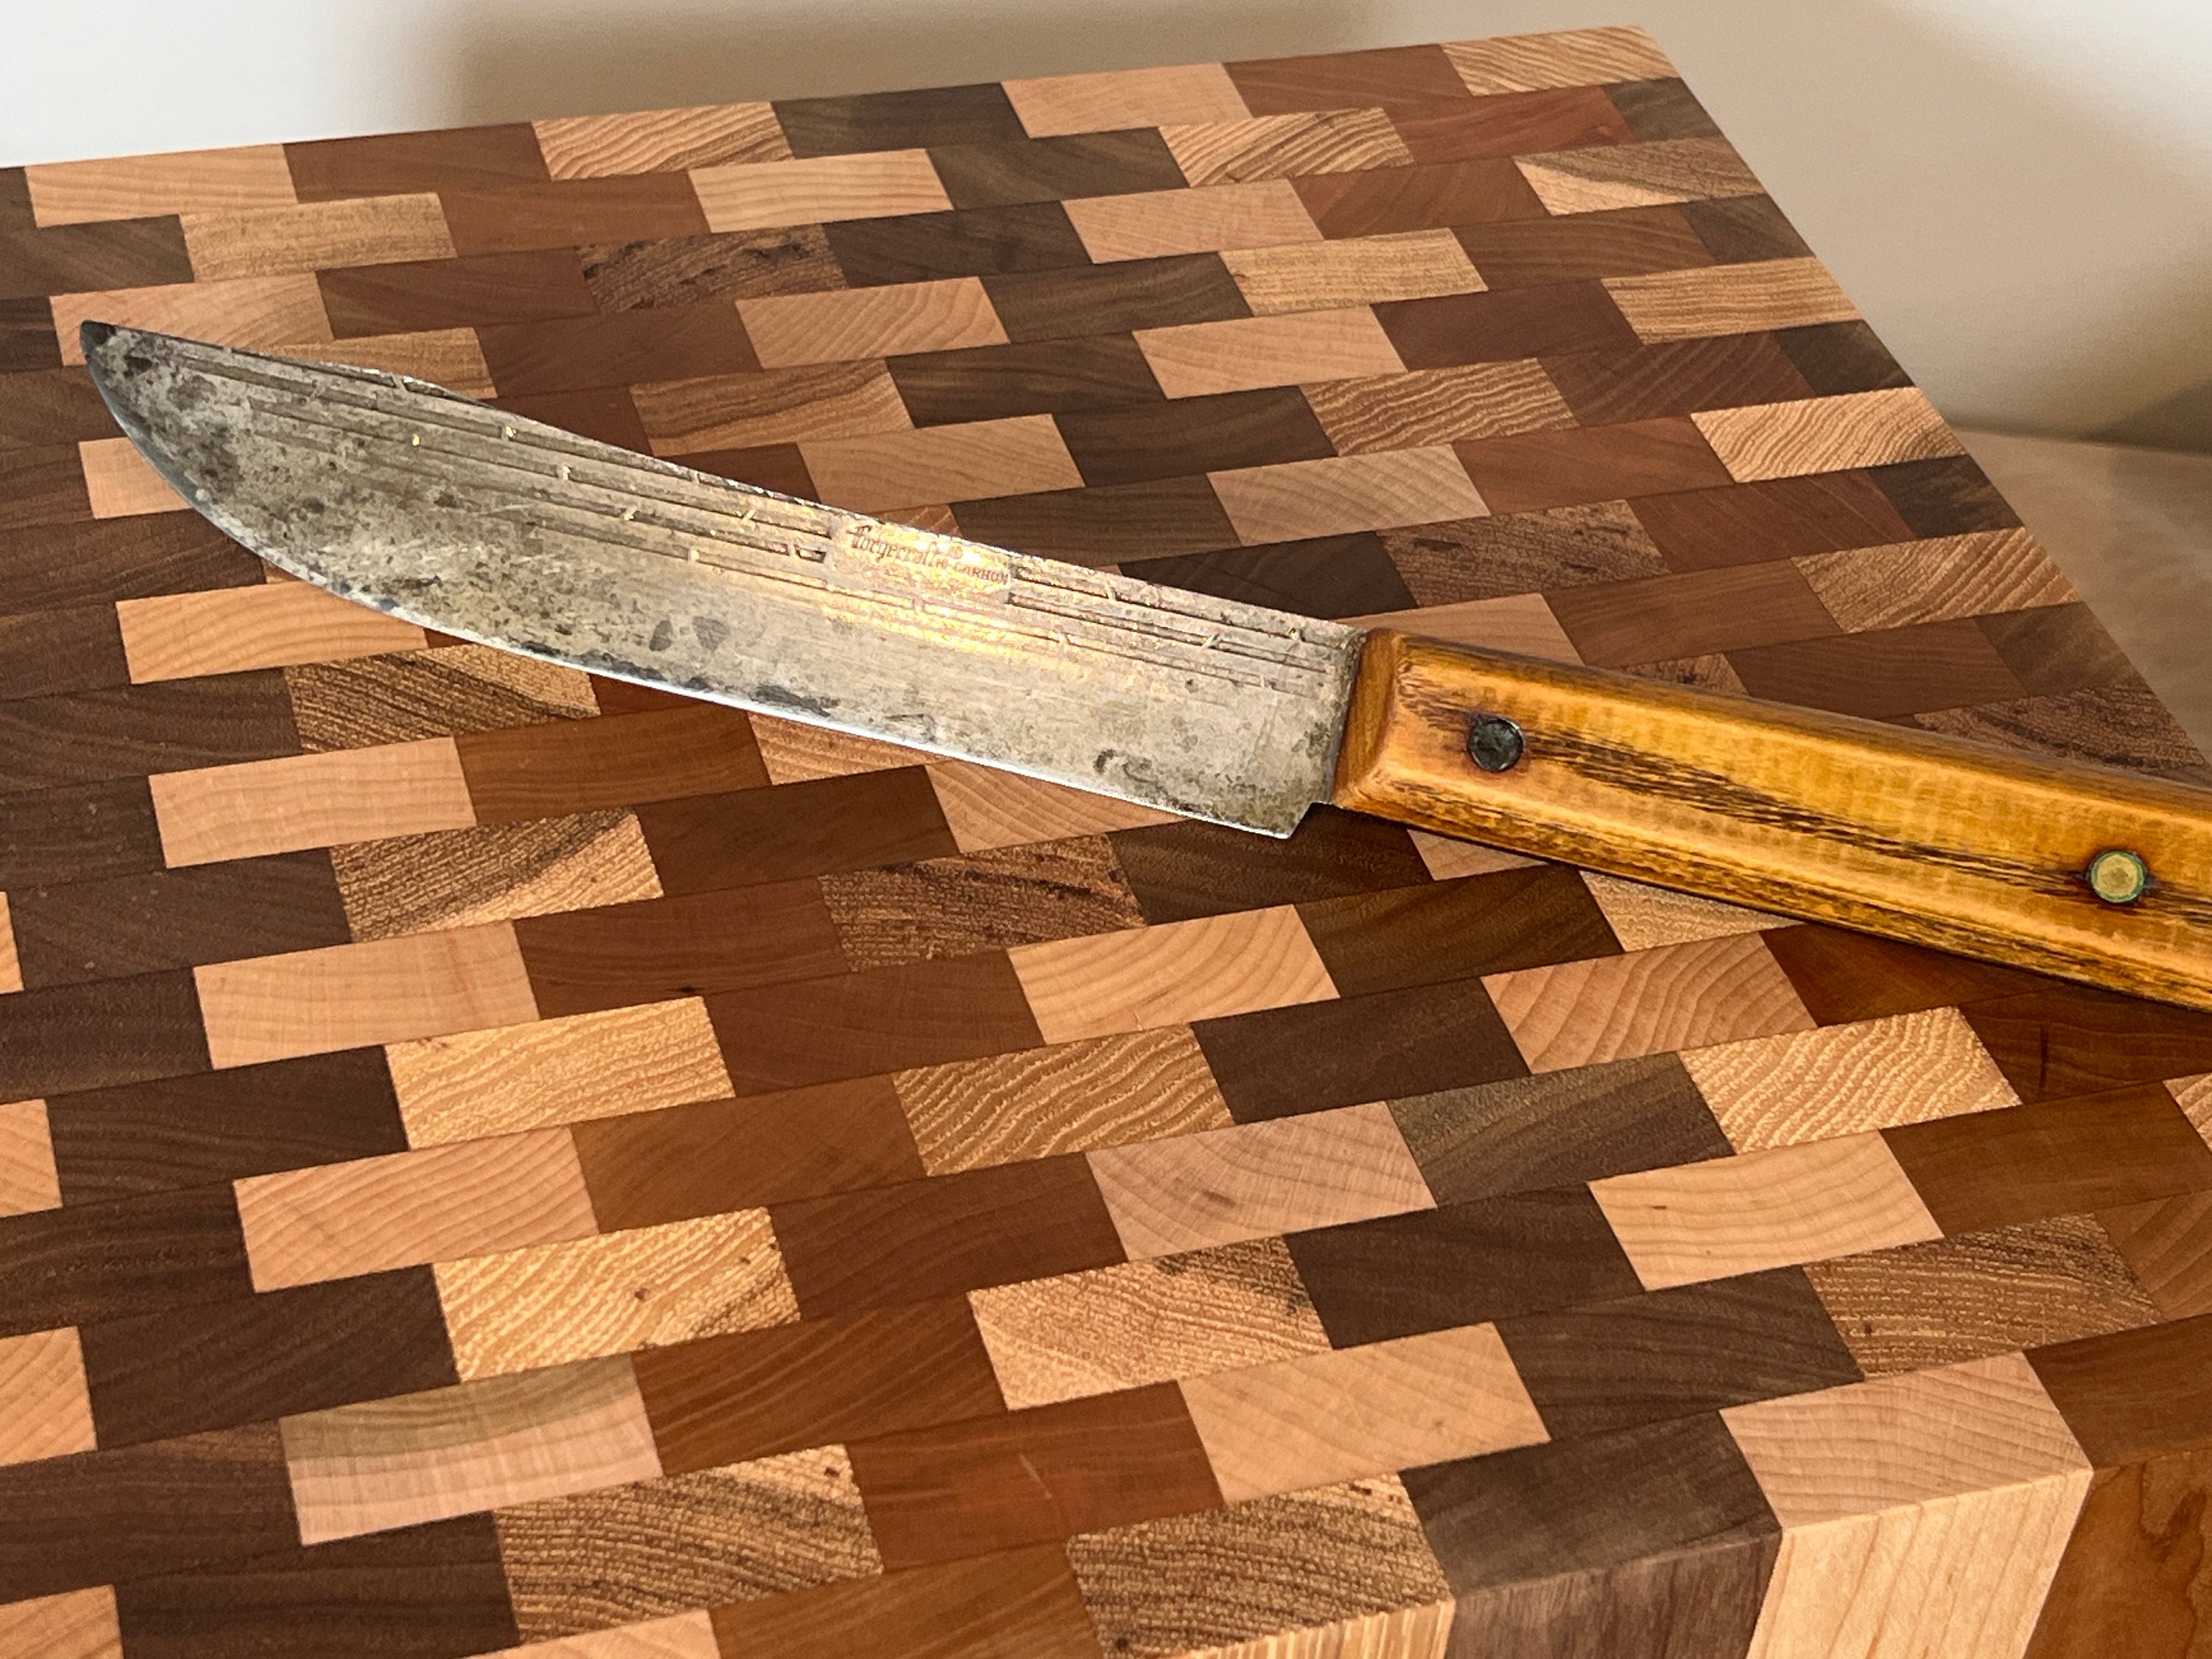 Old Hickory Ontario Knives Vintage 4 Slot Rustic Wood Kitchen Knife Holder  Rack 